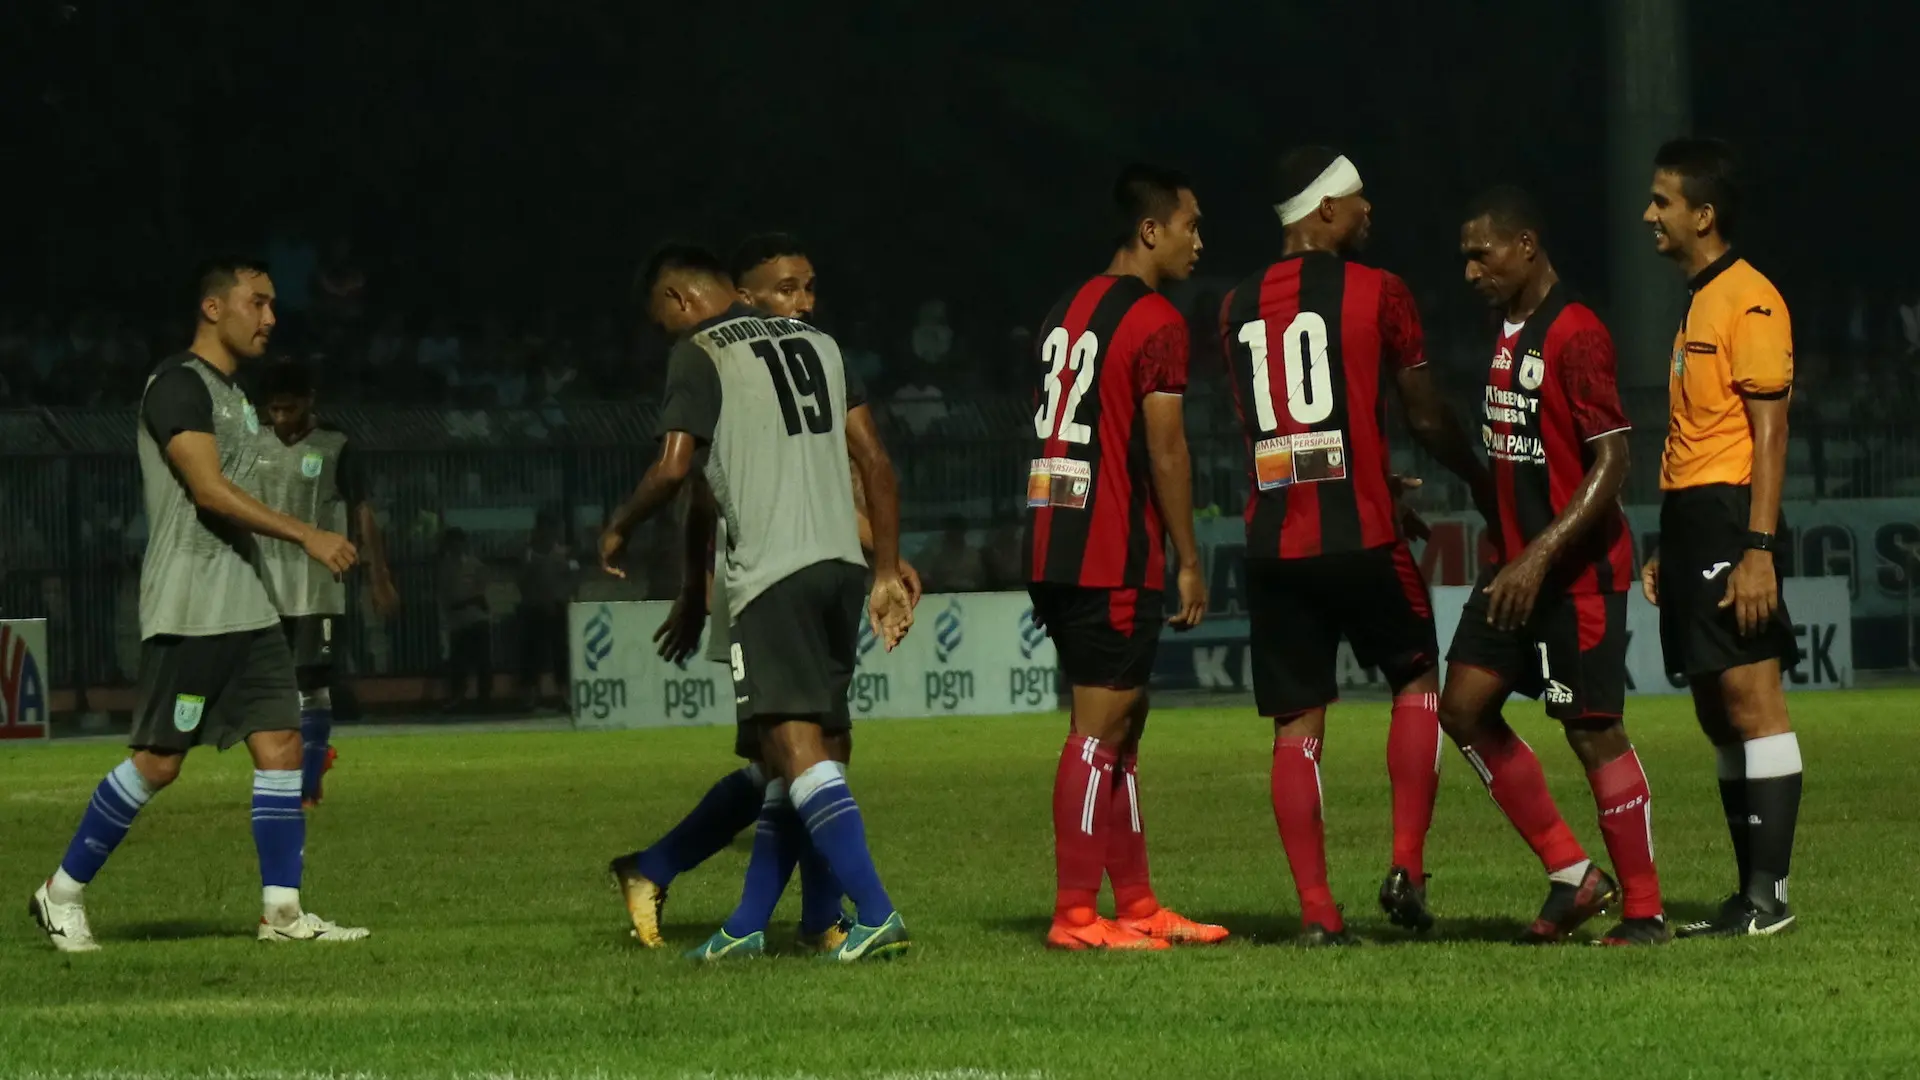 Persipura Jayapura bermain imbang 0-0 melawan Persela Lamongan dalam laga perdana mereka dalam ajang Jakajaya Friendly Game 2018 di Stadion Surajaya, Lamongan, Jumat (9/3/2018). (Bola.com/Aditya Wany)